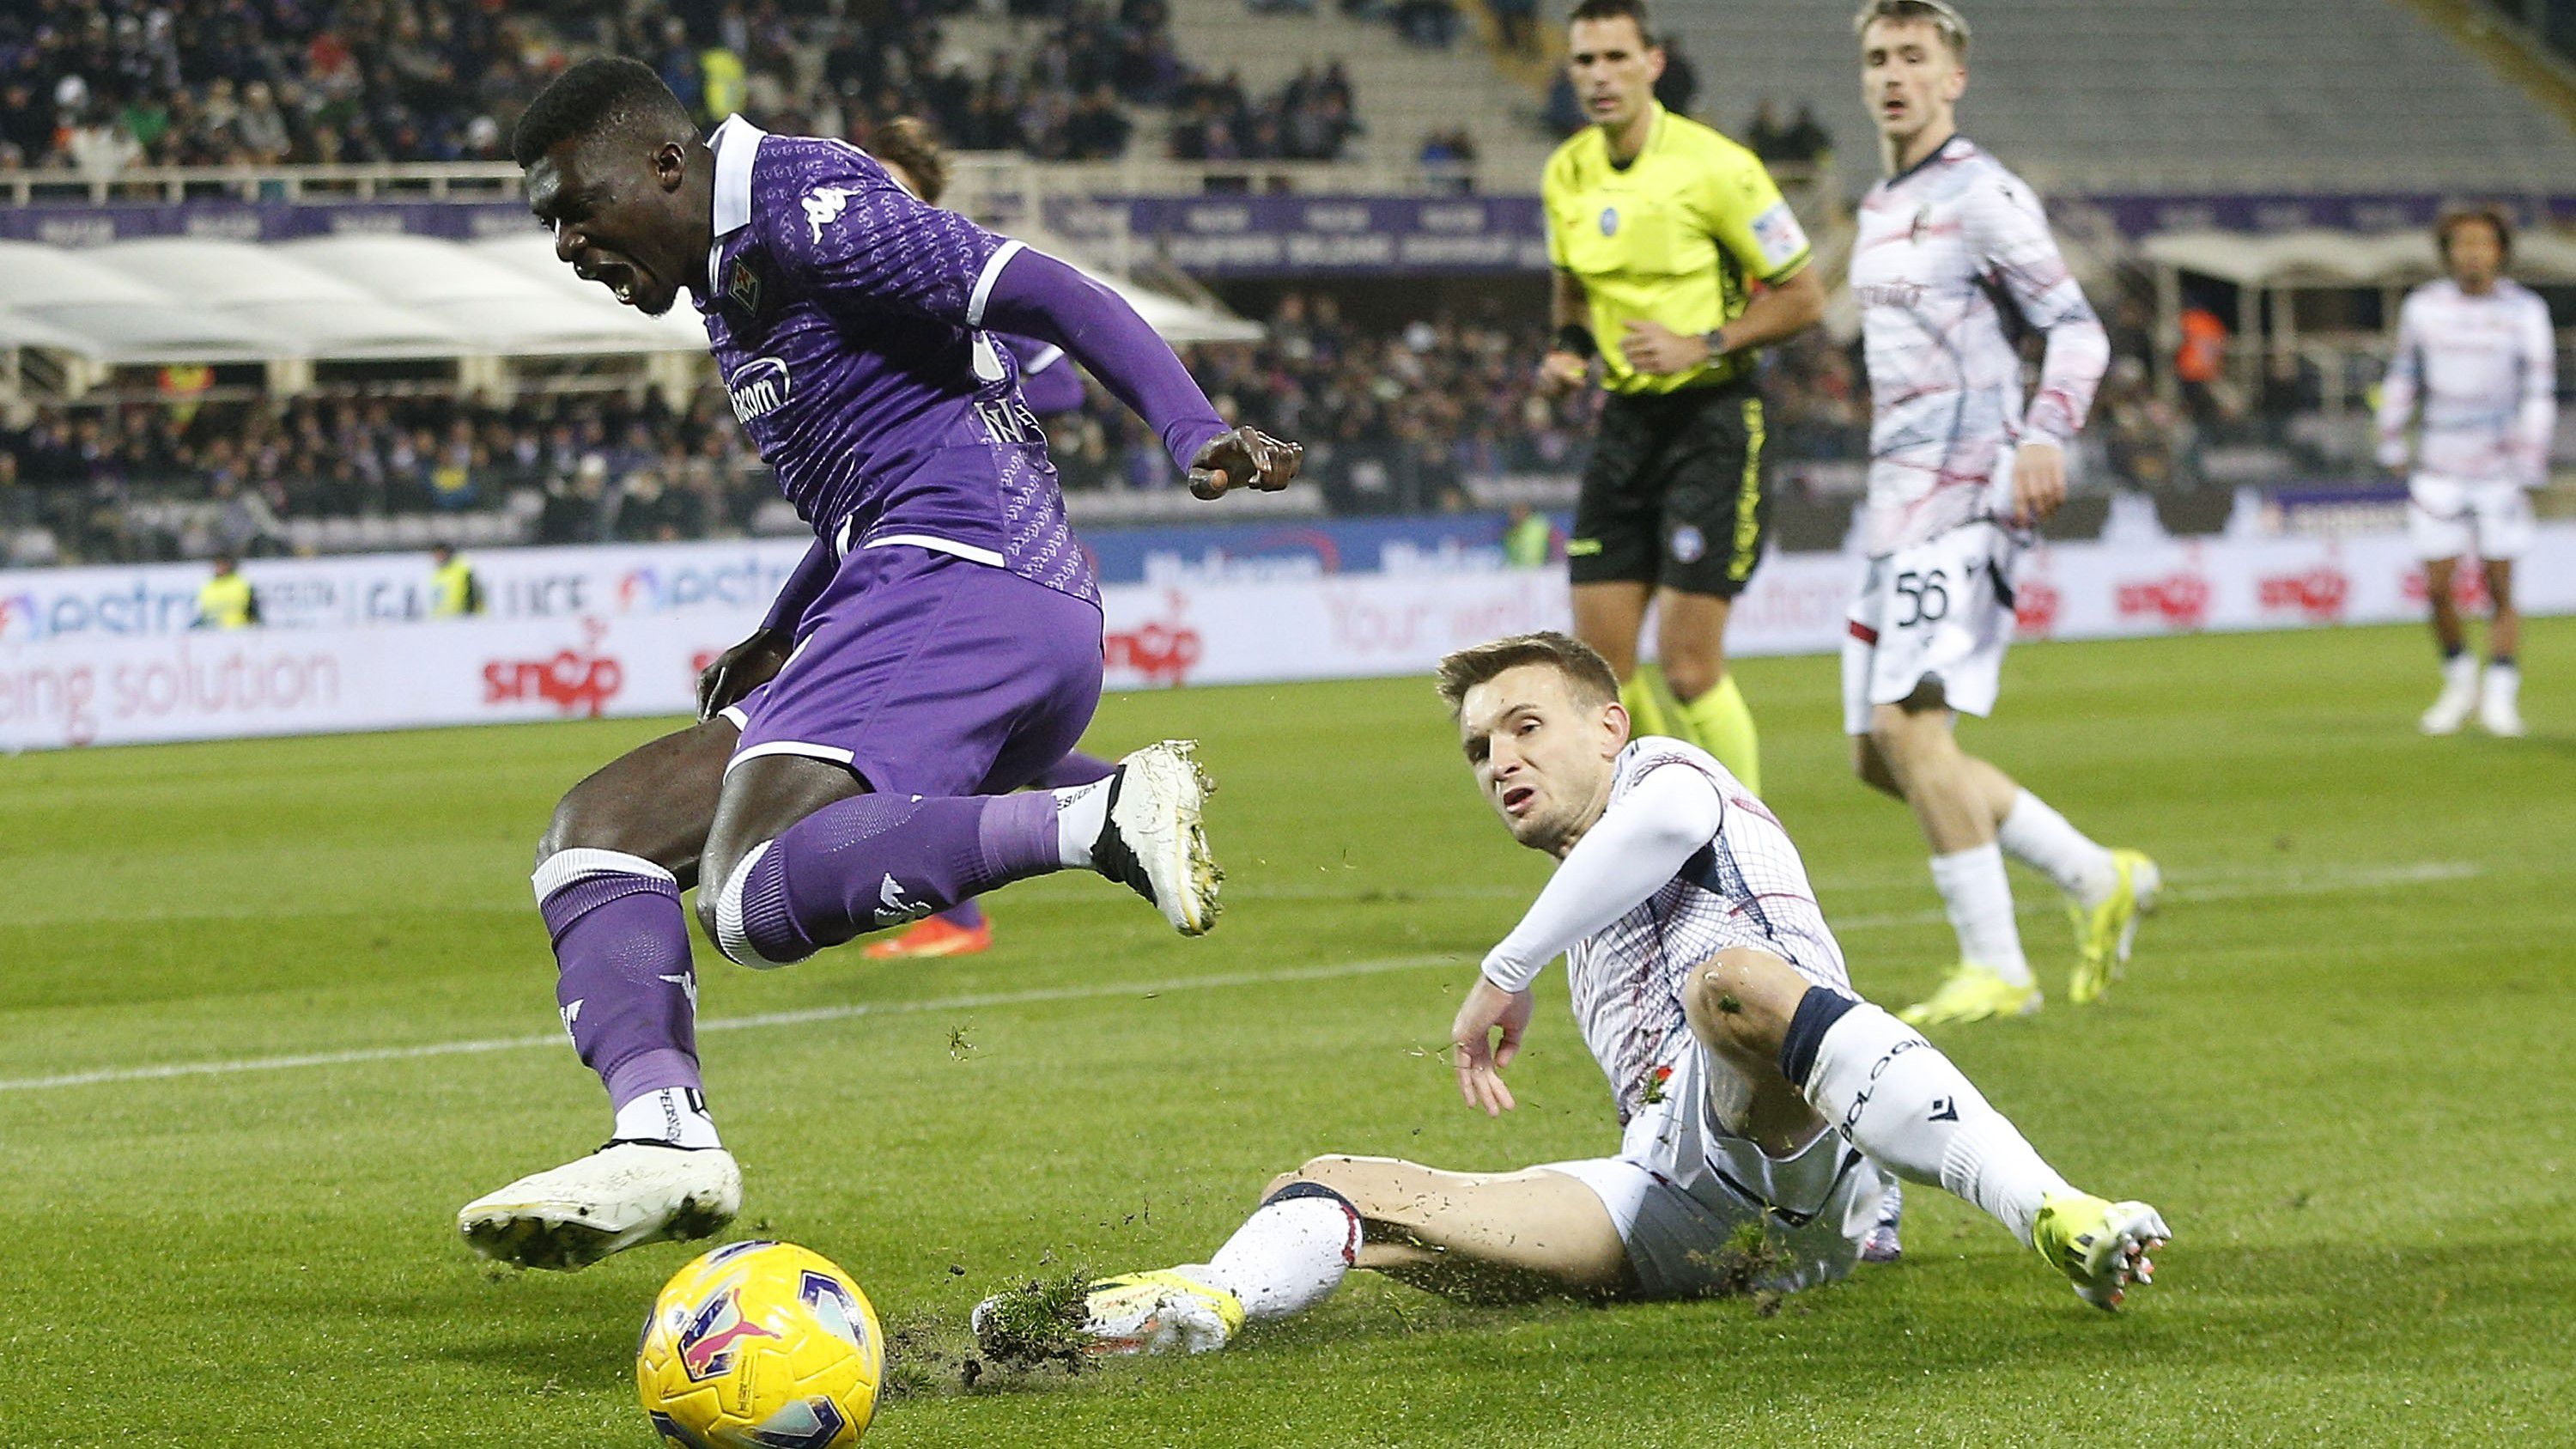 Tizenegyesekkel dőlt el: sorozatban harmadszor kupaelődöntős a Fiorentina